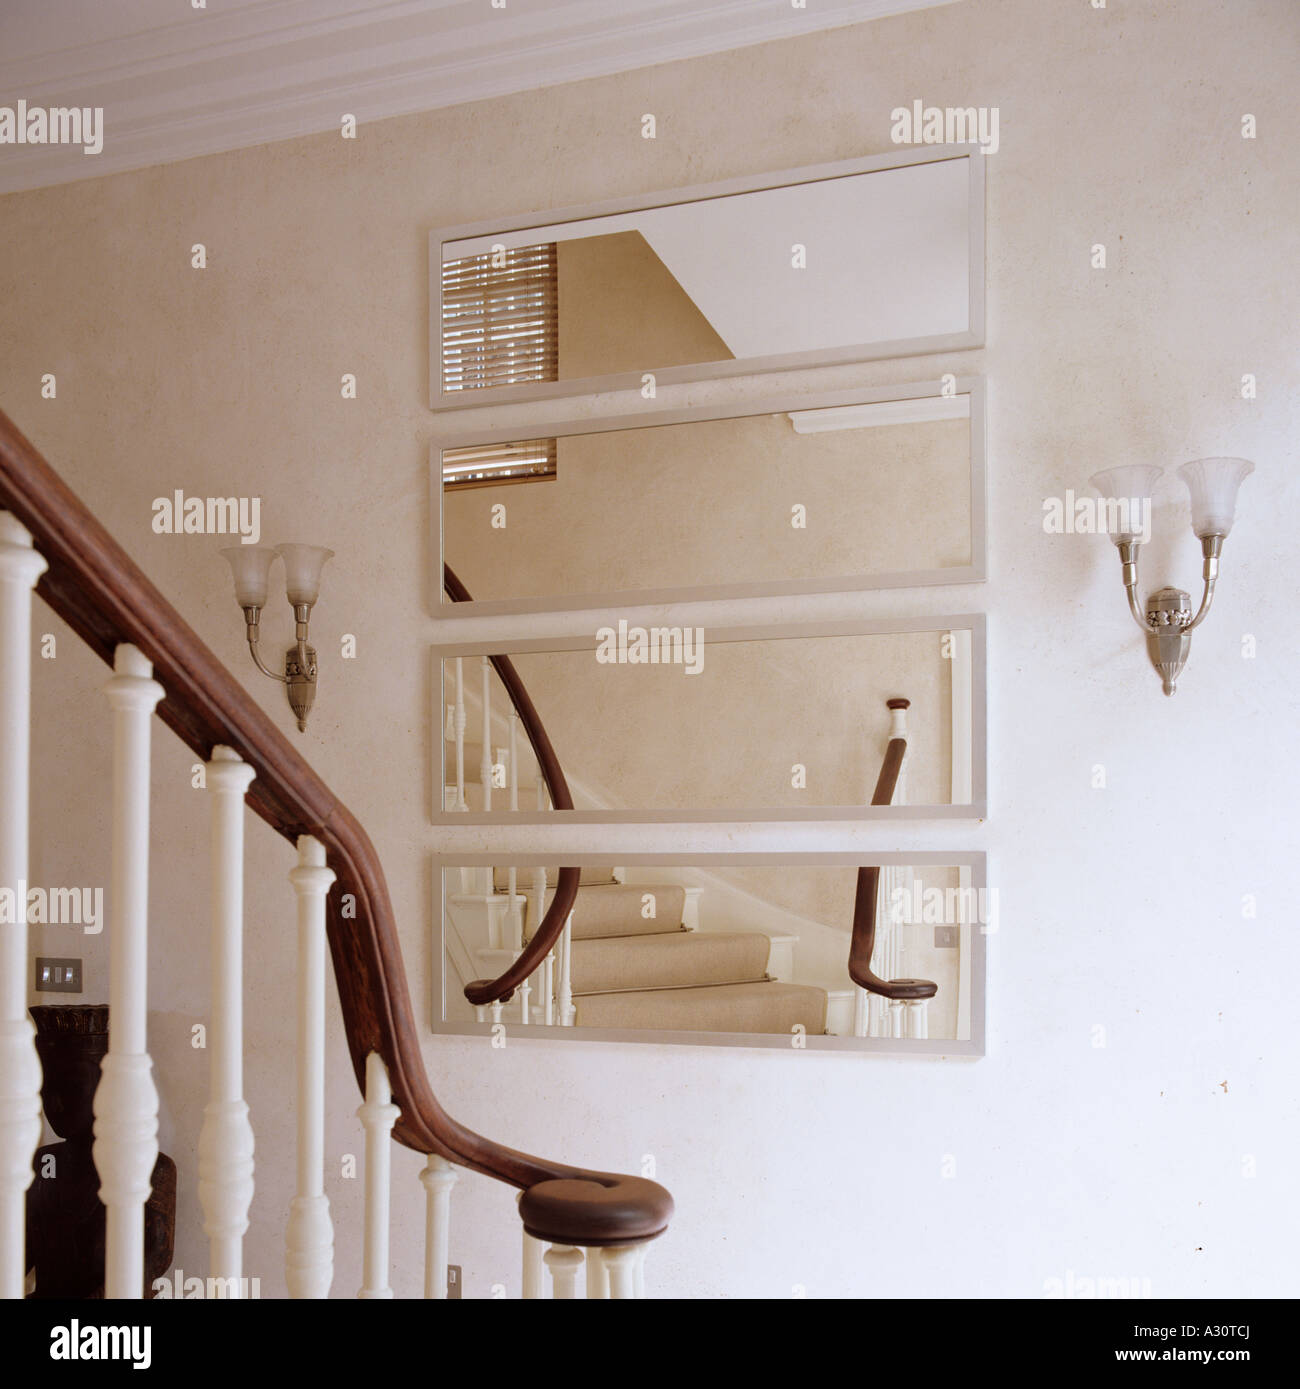 Escalier et miroir au mur dans un Londres chambre Photo Stock - Alamy